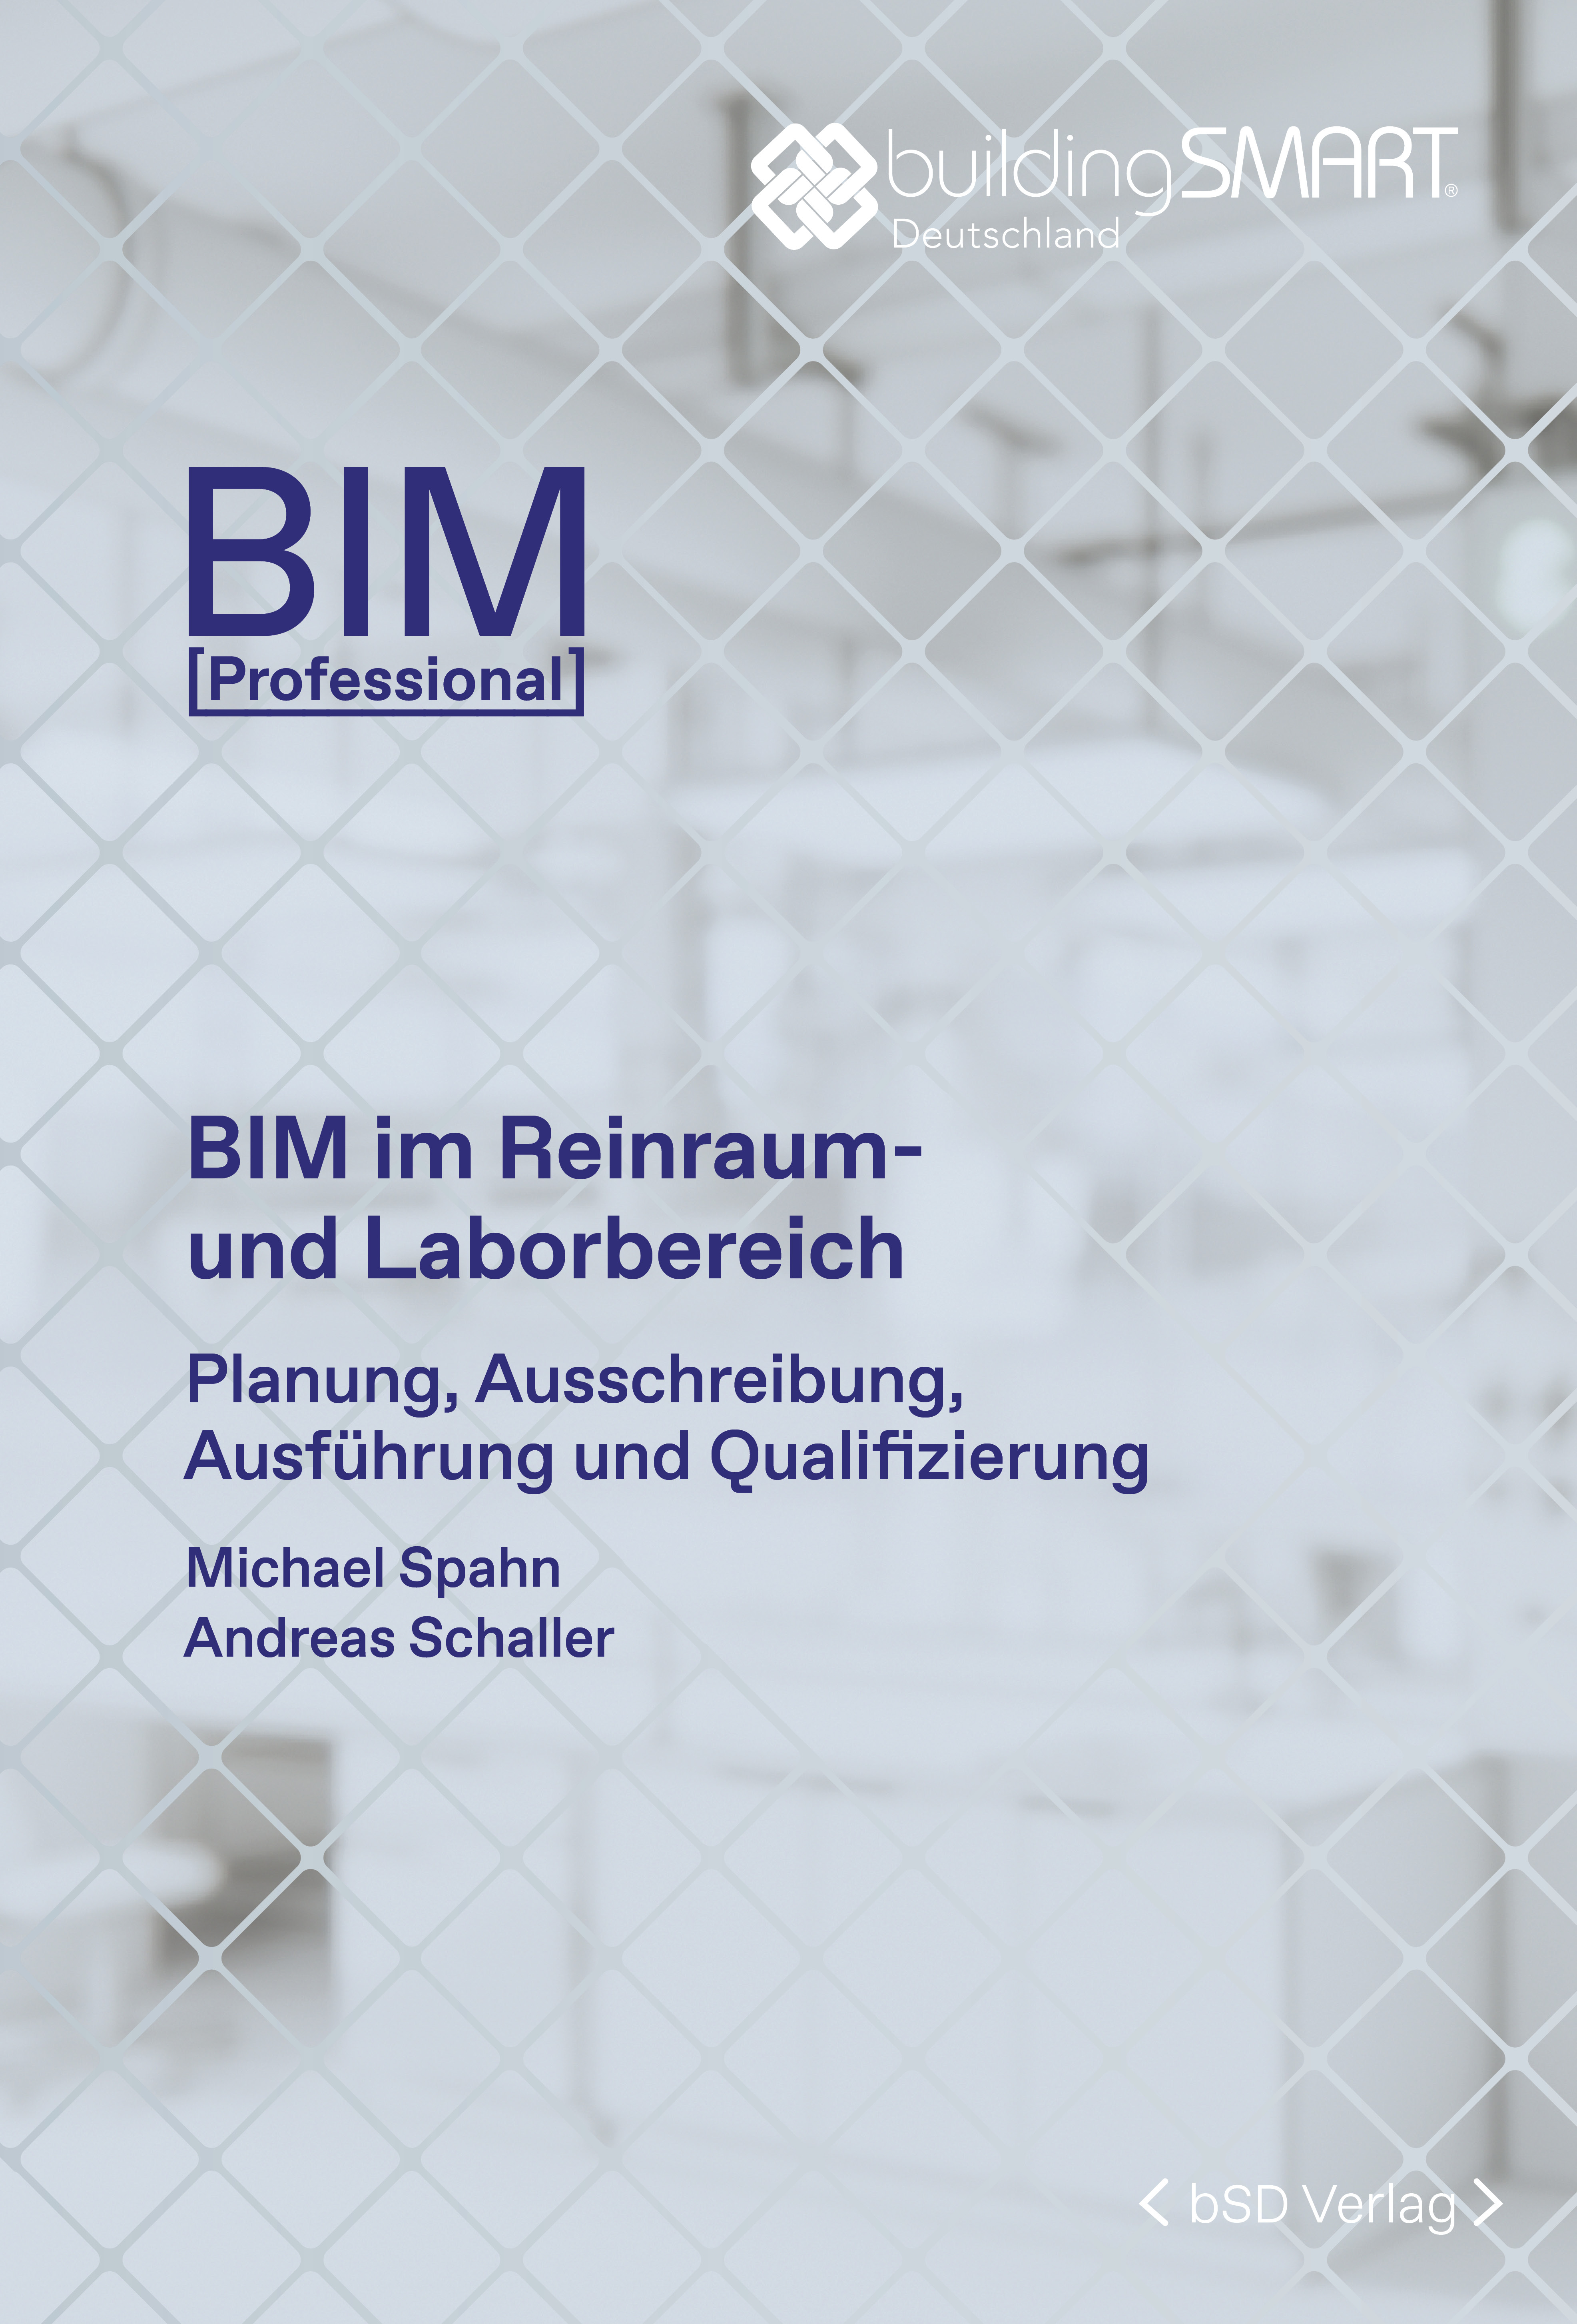 bSD Verlag/BIM Professional: BIM im Labor- und Reinraumbereich